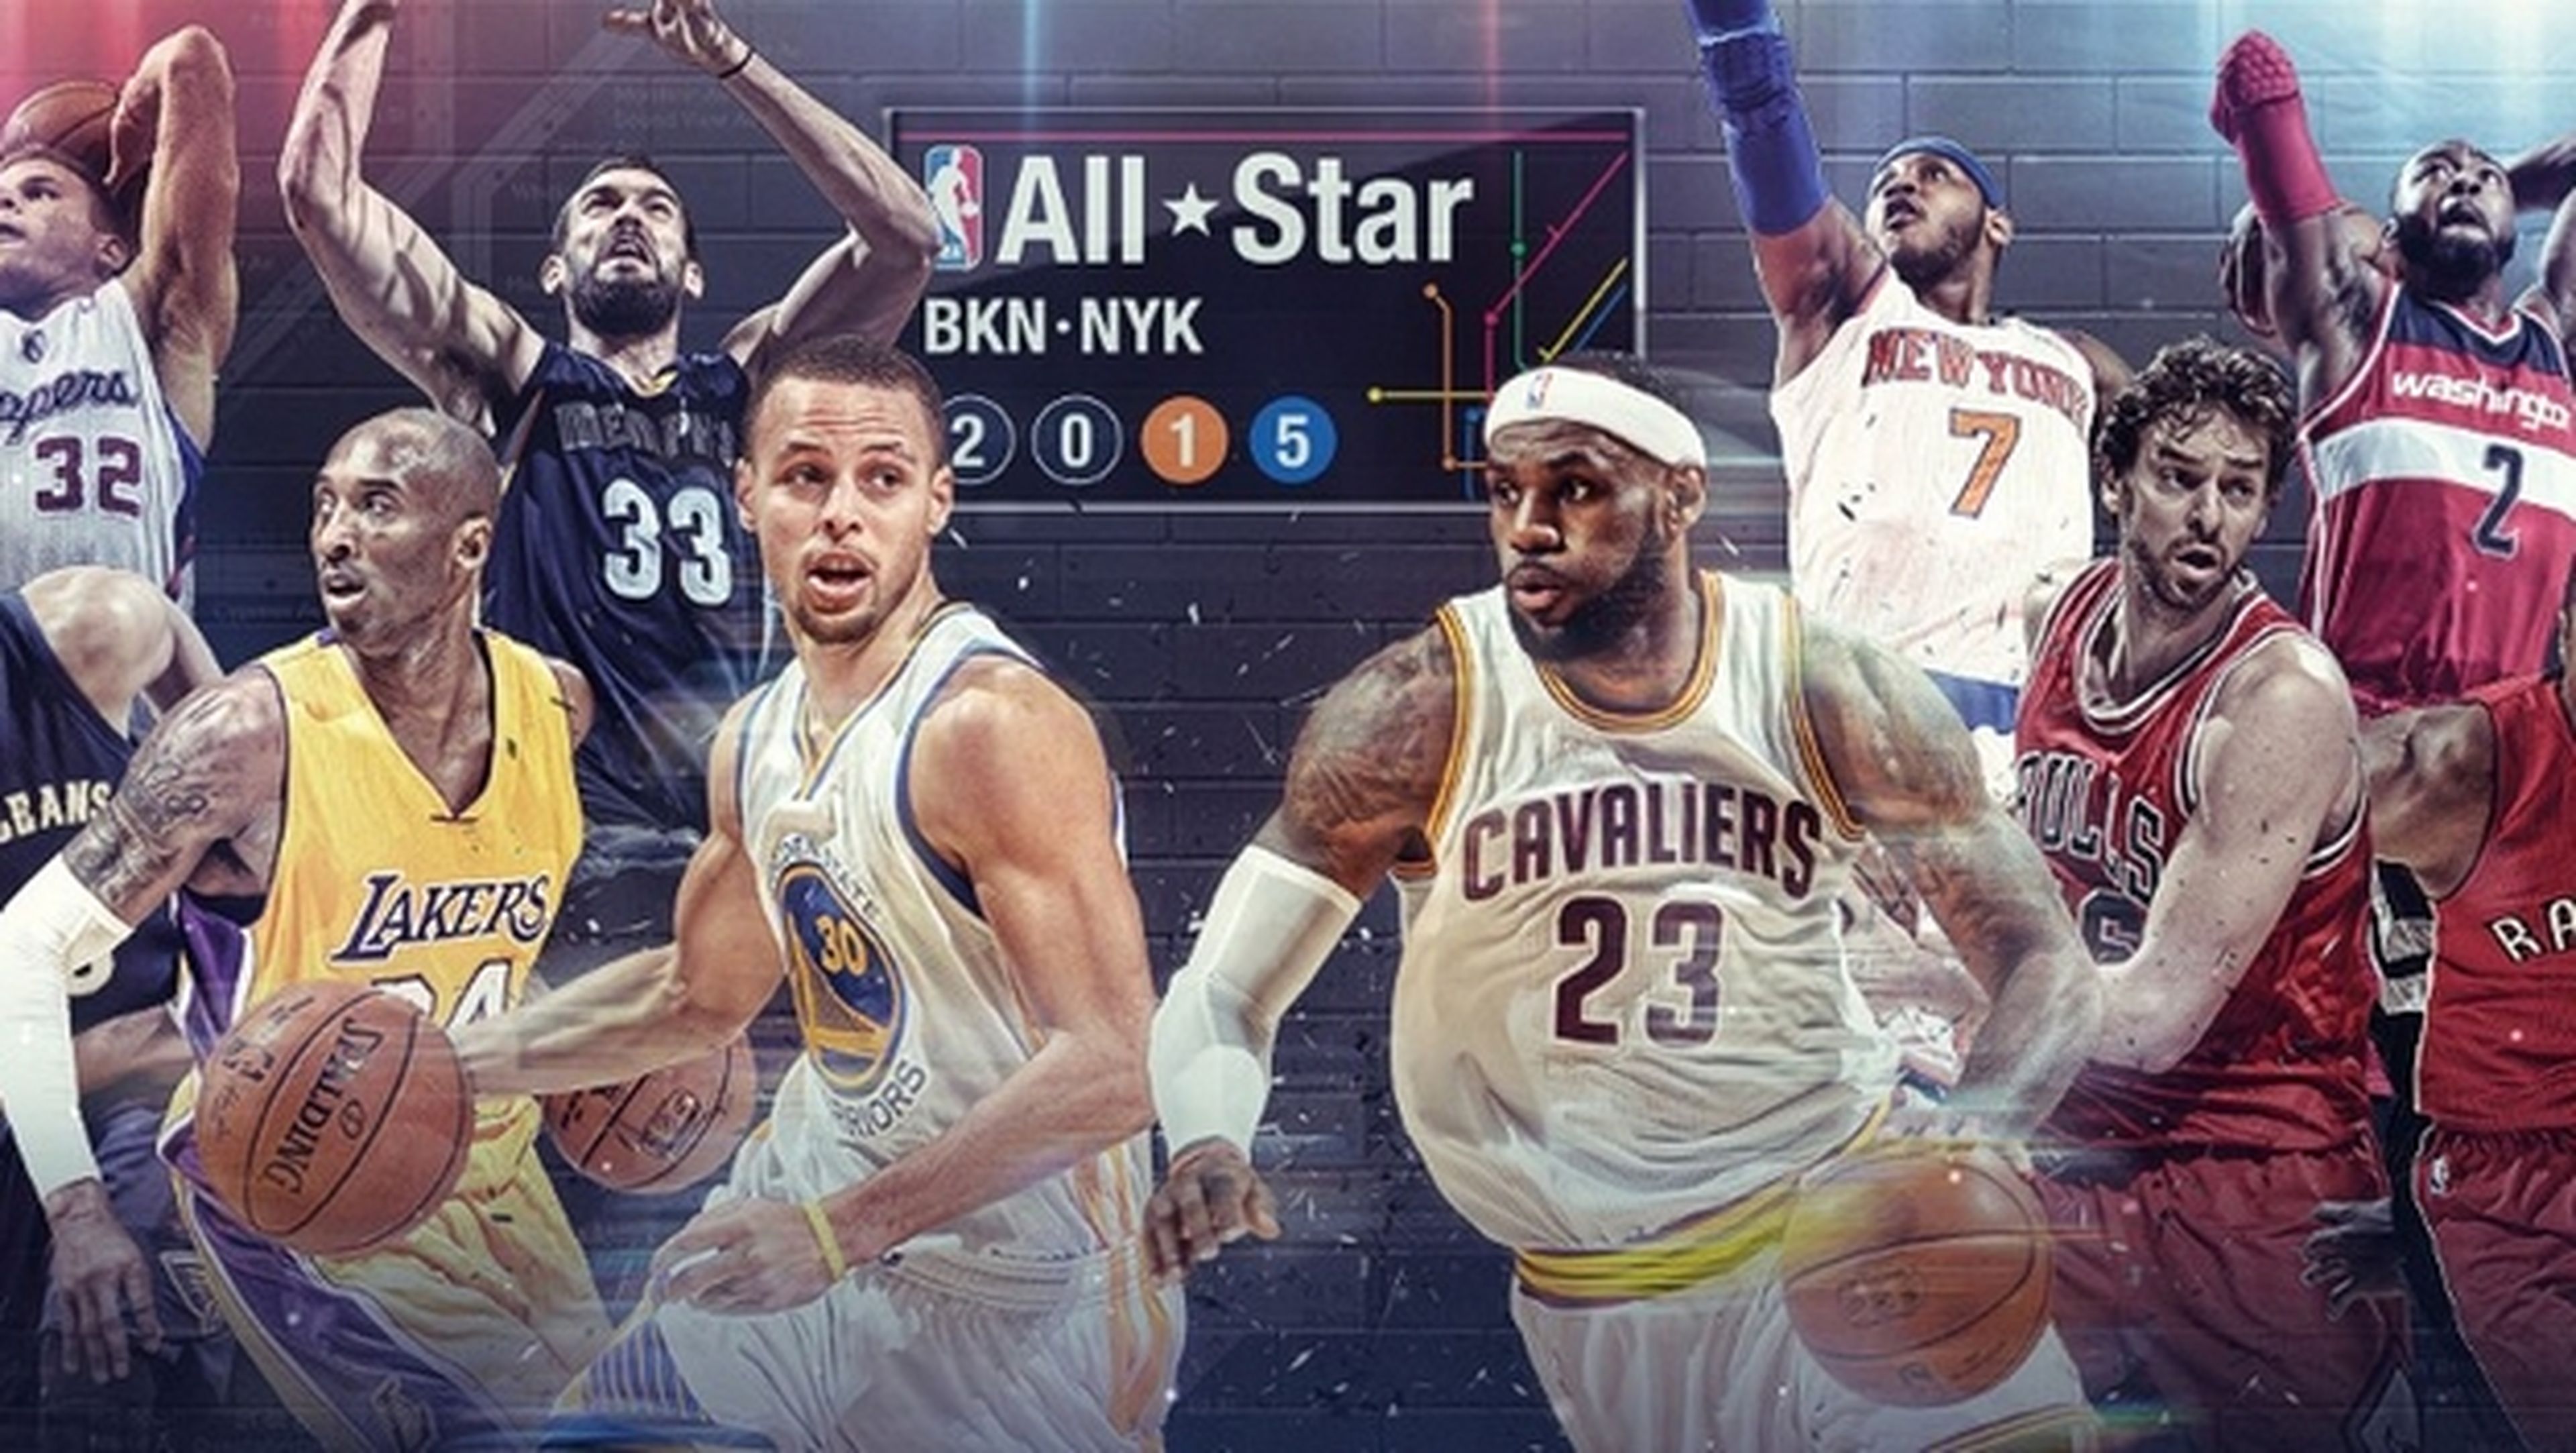 Dónde ver online el All-Star 2015 de la NBA con Marc y Pau Gasol.